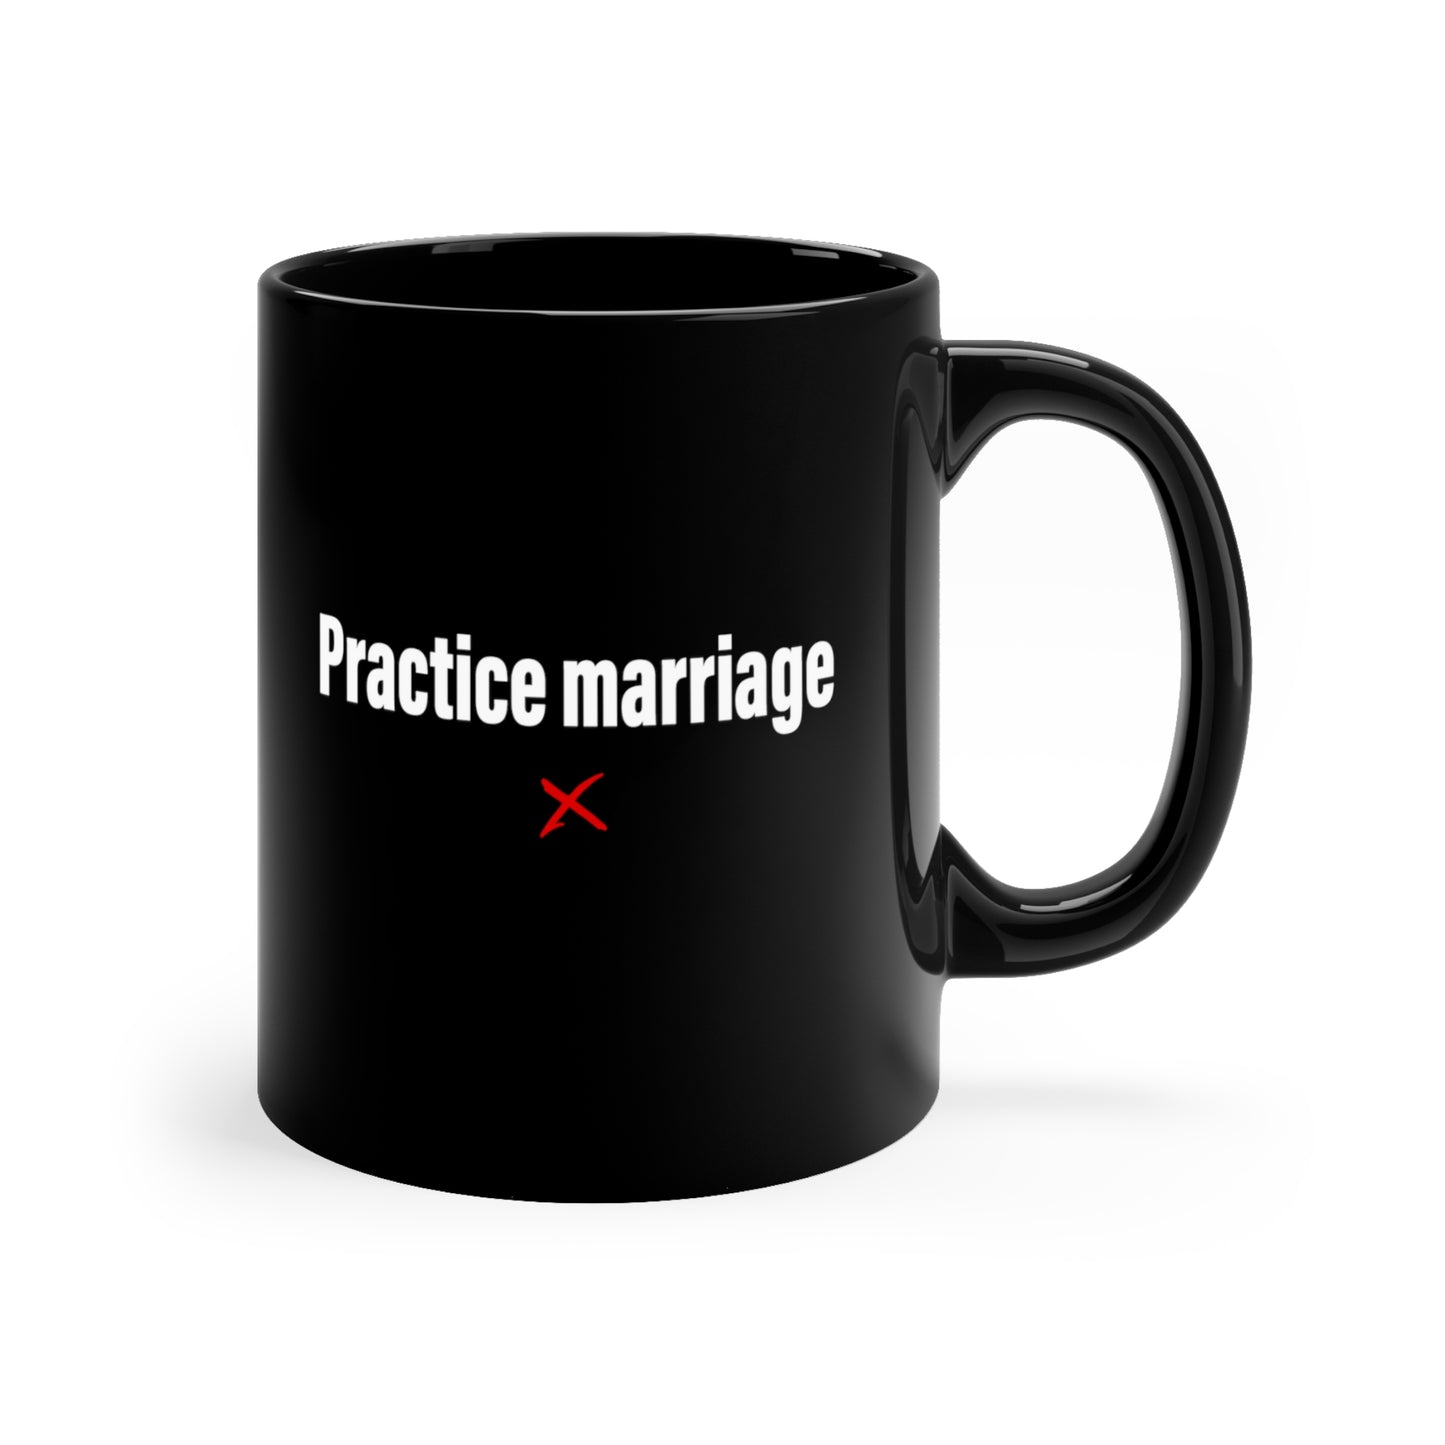 Practice marriage - Mug